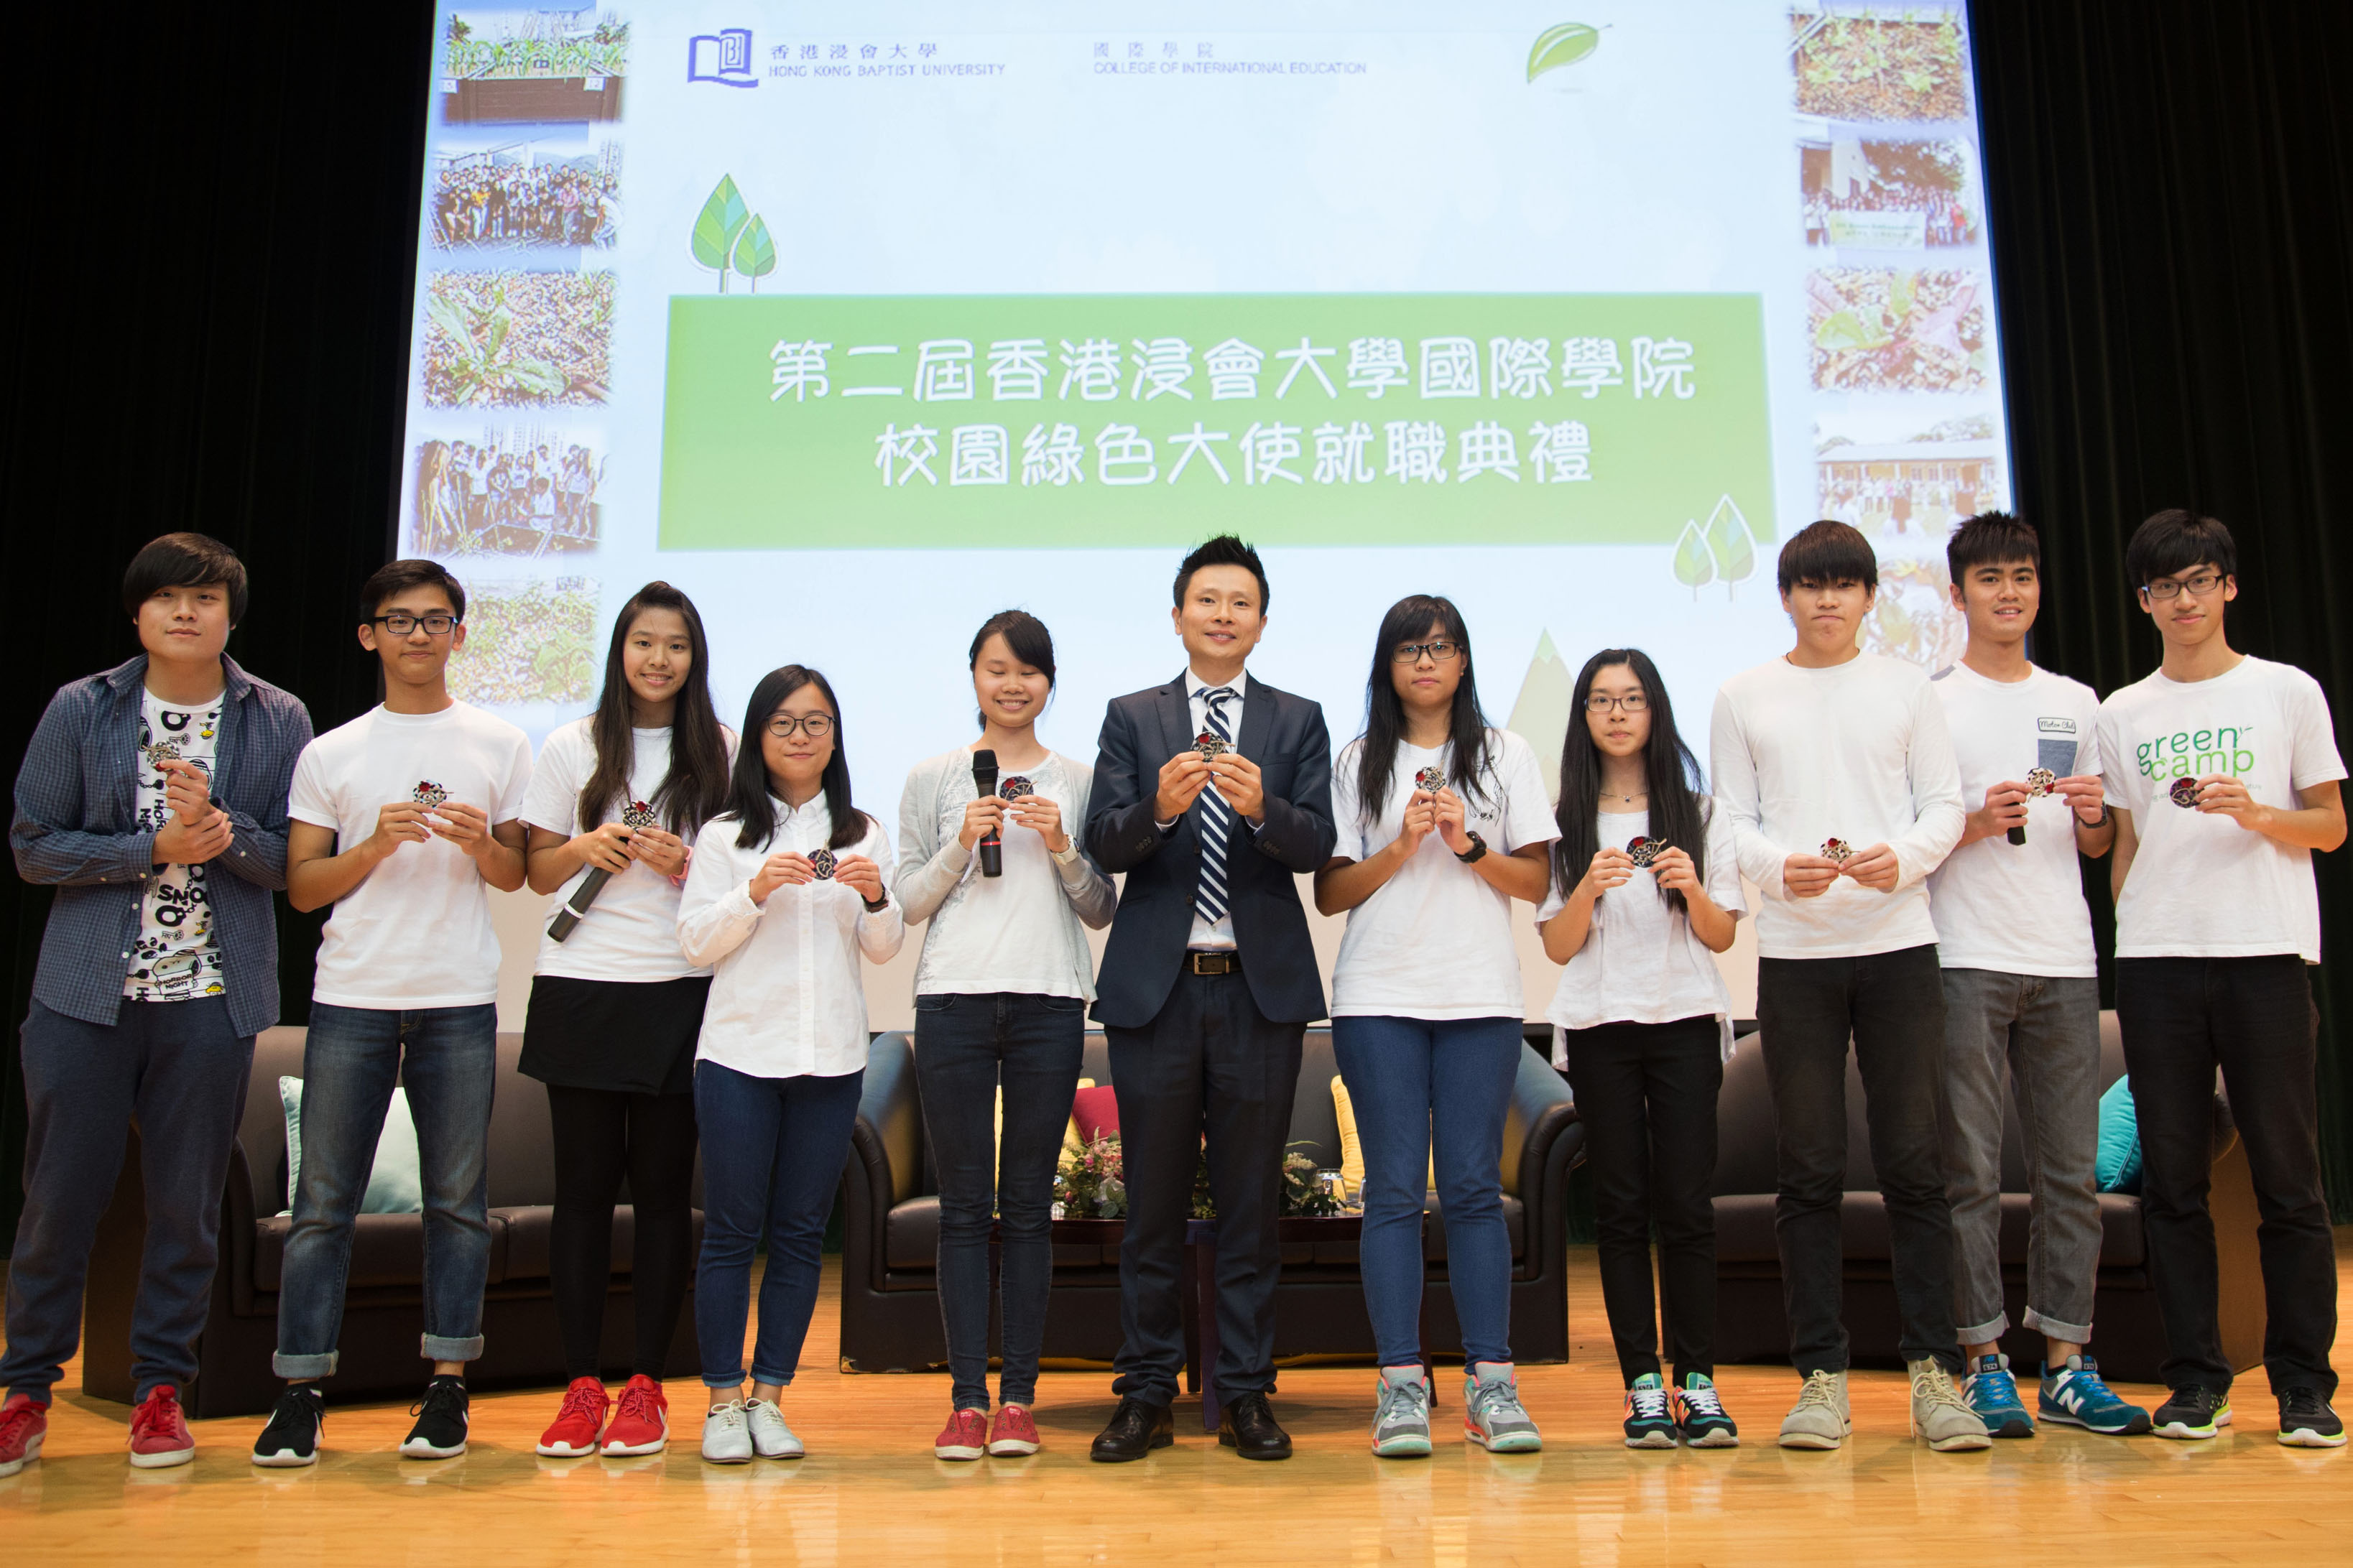 学院总监刘信信博士于活动上向今年的绿色大使颁发就职襟章，期望他们可以在校园内进一步推广可持续发展的生活模式。